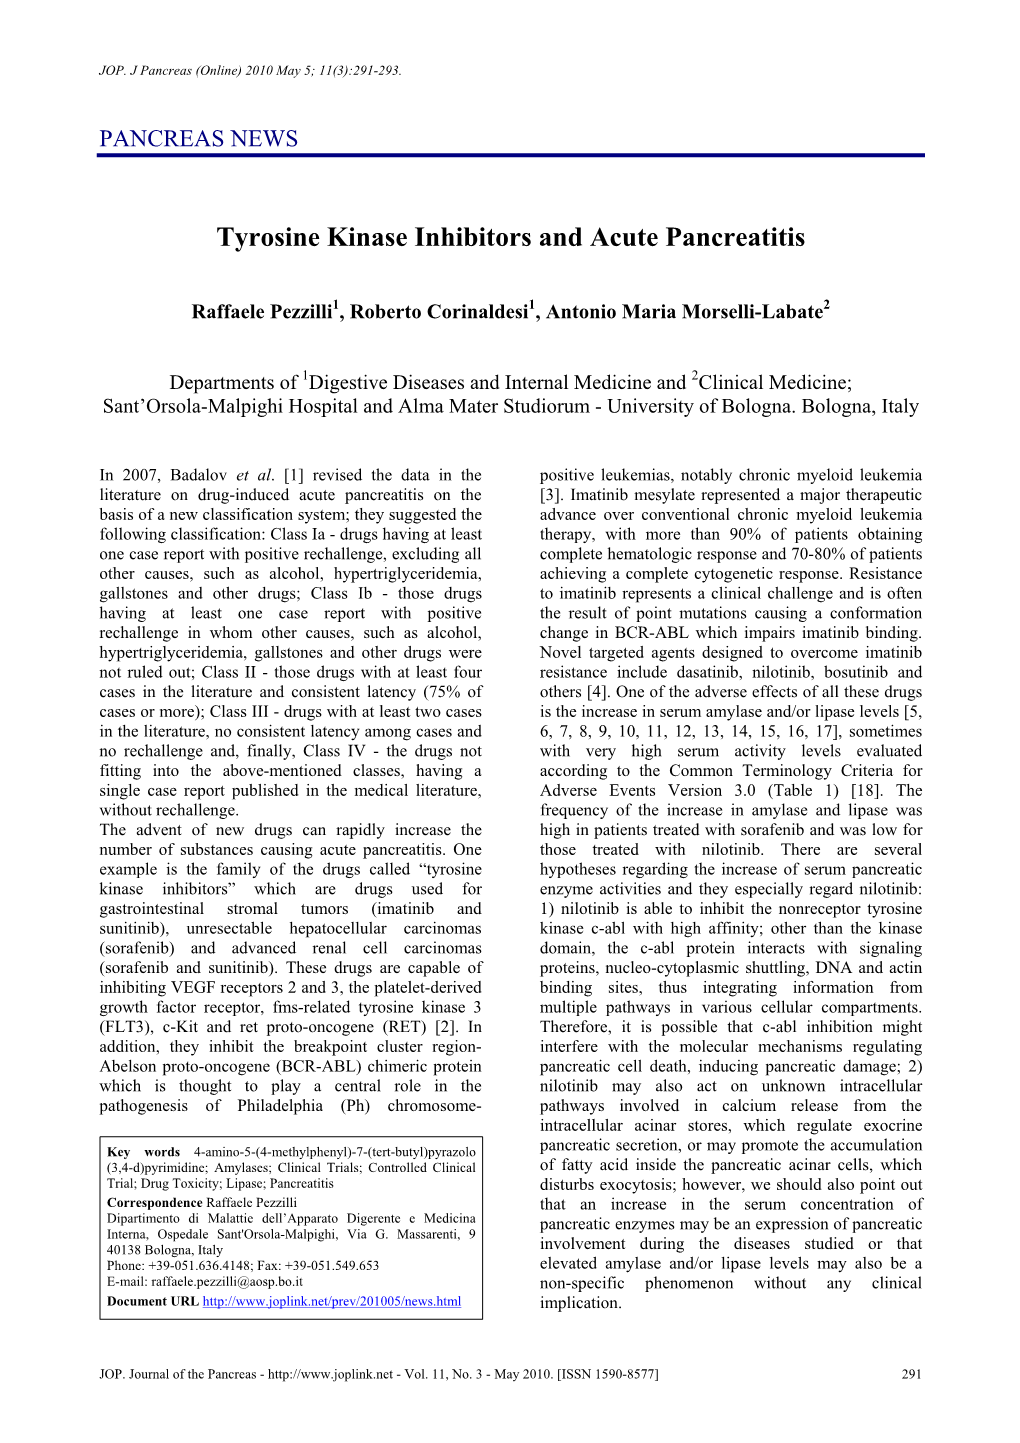 Tyrosine Kinase Inhibitors and Acute Pancreatitis